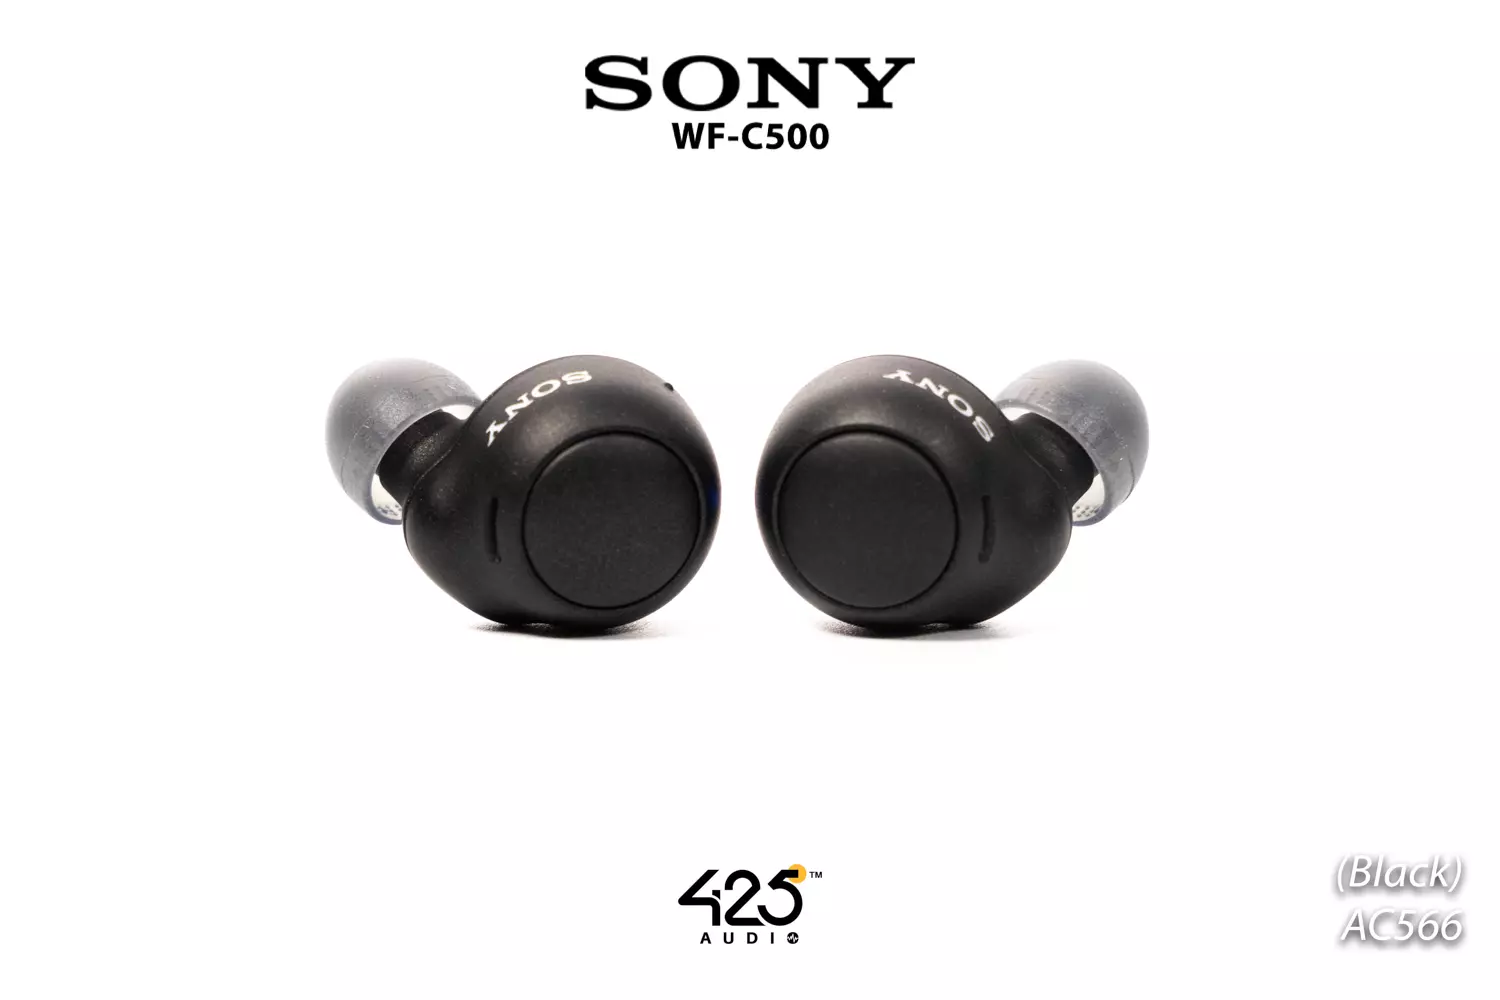 หูฟัง Sony Wf-C500 True Wireless เน้นฟังดนตรี, Eq เสียงใน App ได้ รีวิวชัด  คัดของดี สั่งง่าย ส่งไว ได้ของชัวร์